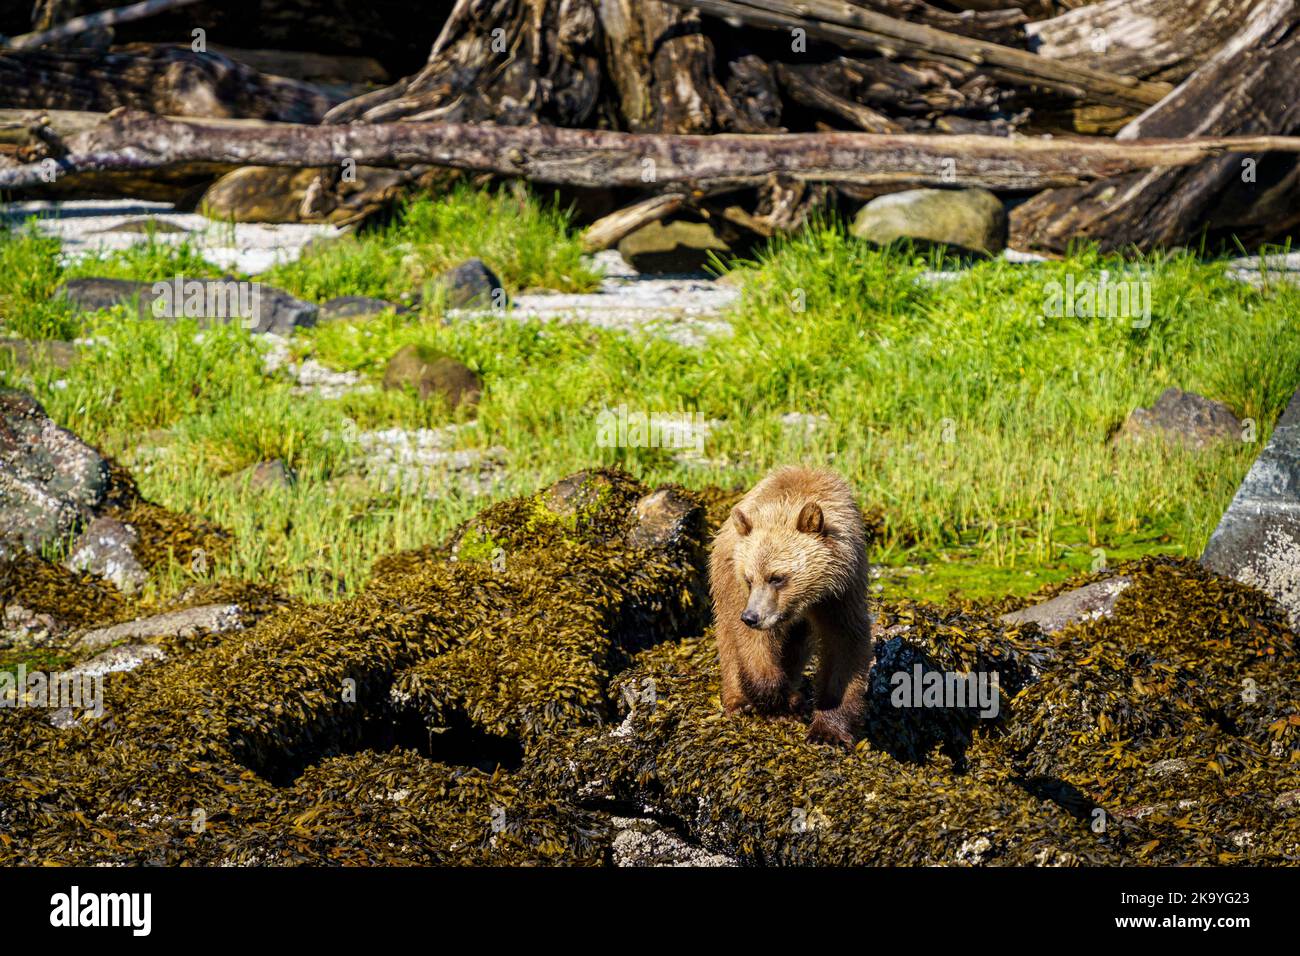 Cucciolo di orso grizzly, 2nd anno, in alghe marine con bassa marea lungo la costa di Knight Inlet, Knight Inlet, territorio delle prime Nazioni, territori tradizionali di Foto Stock